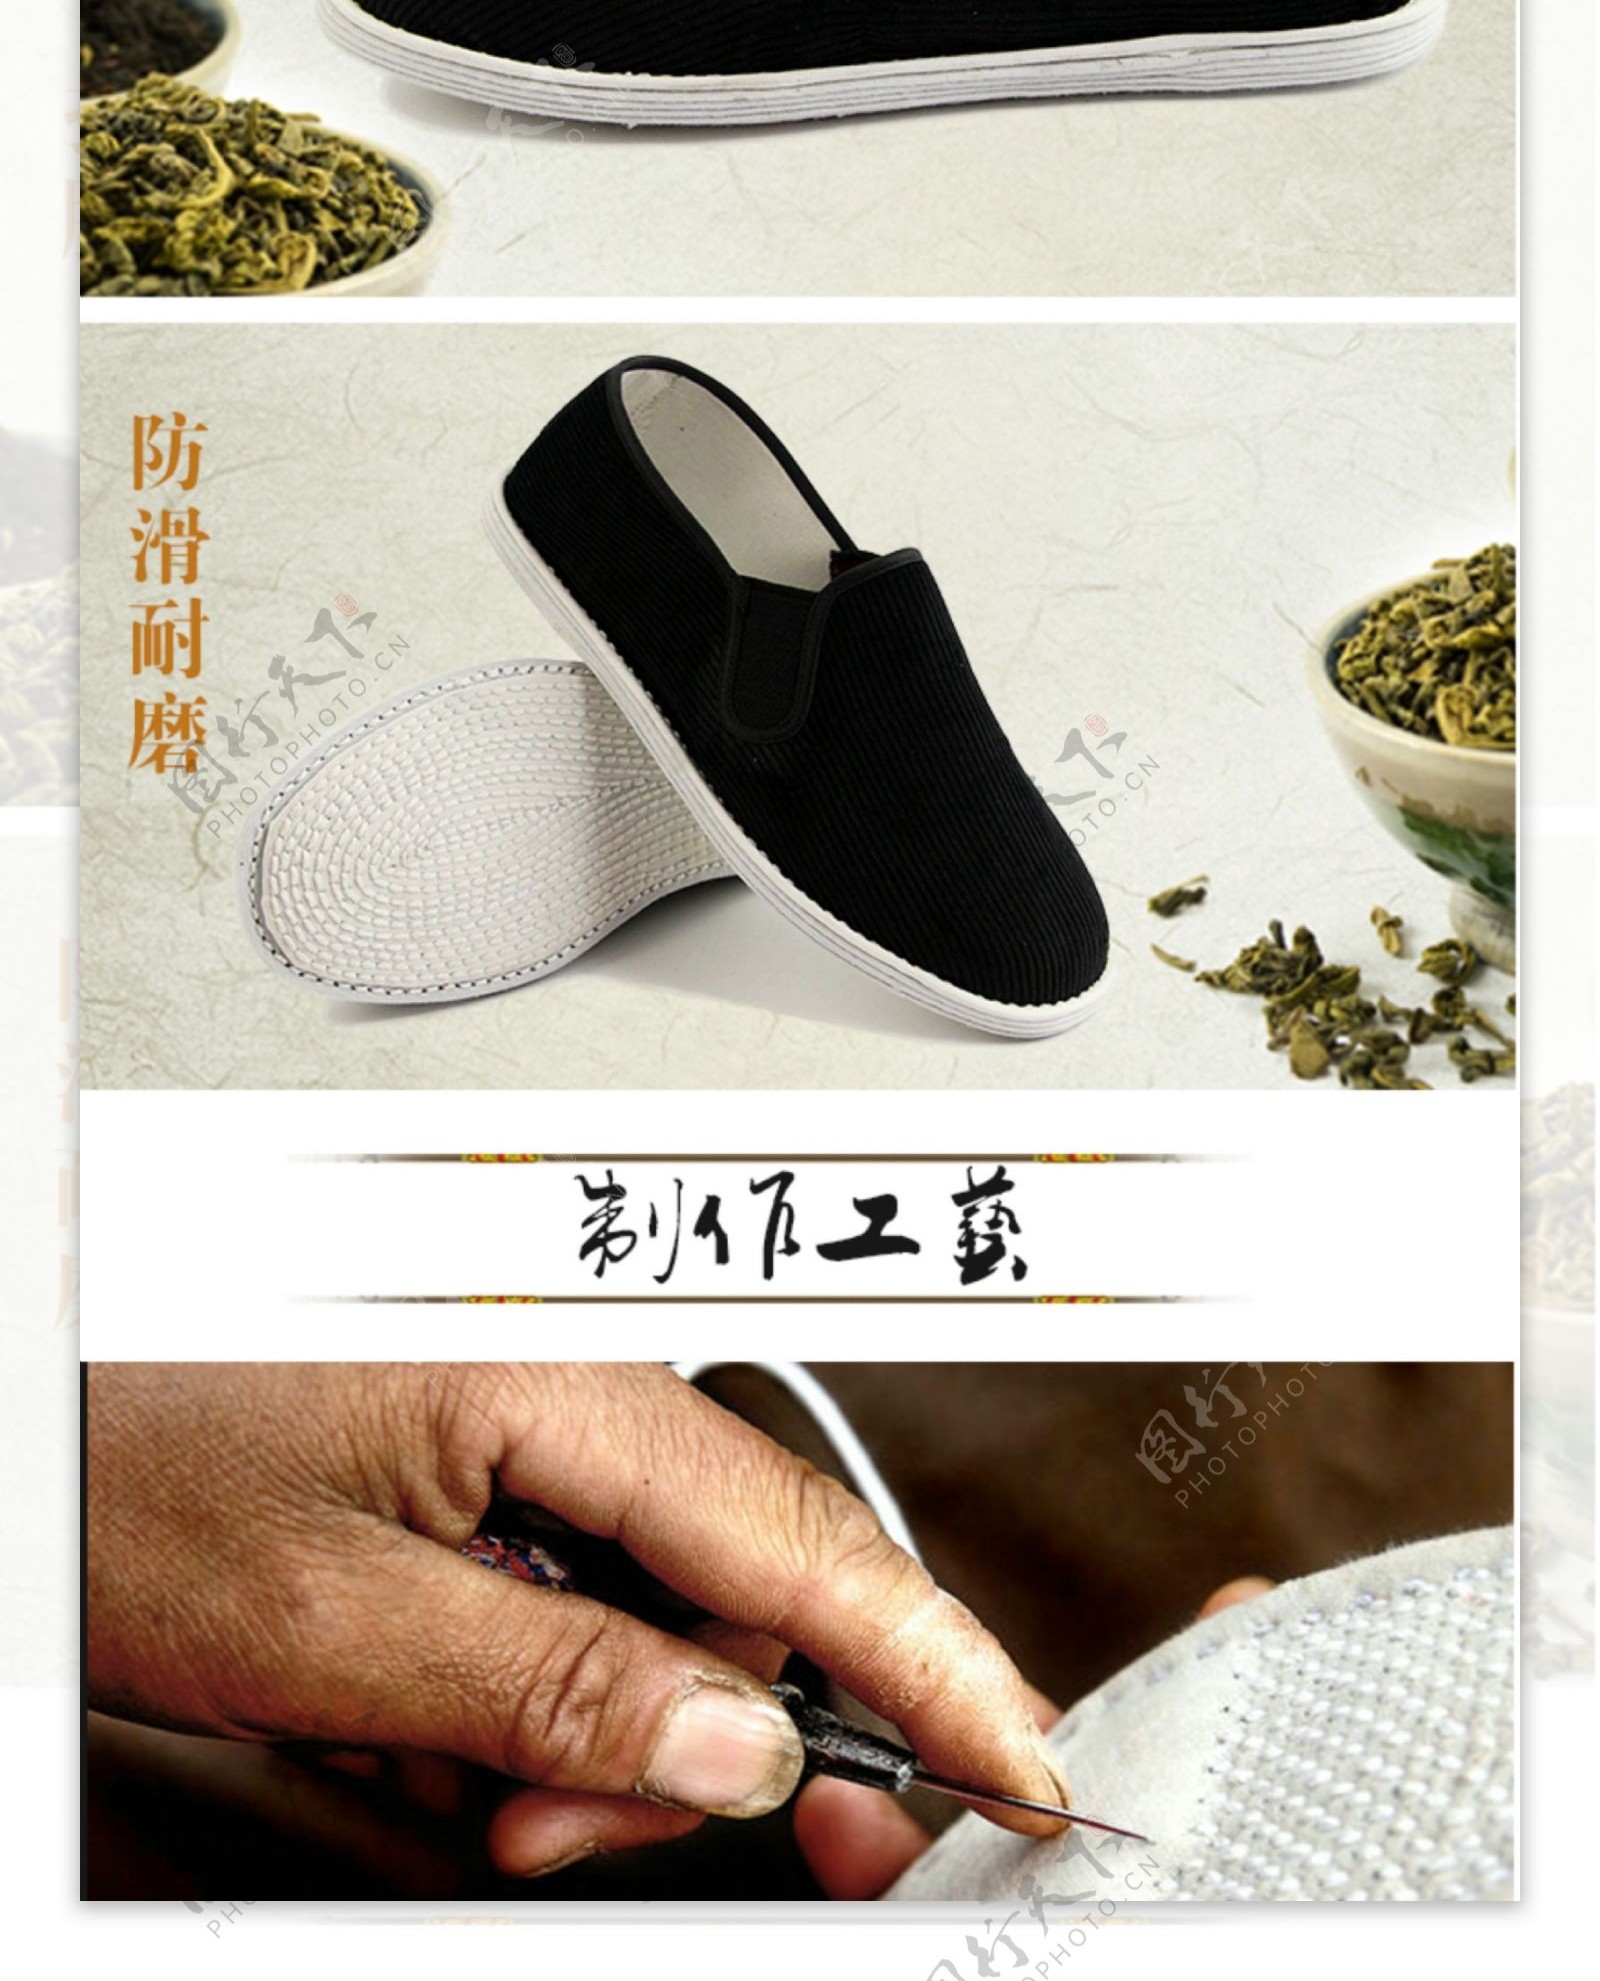 中国风千层底舒适养生布鞋详情页